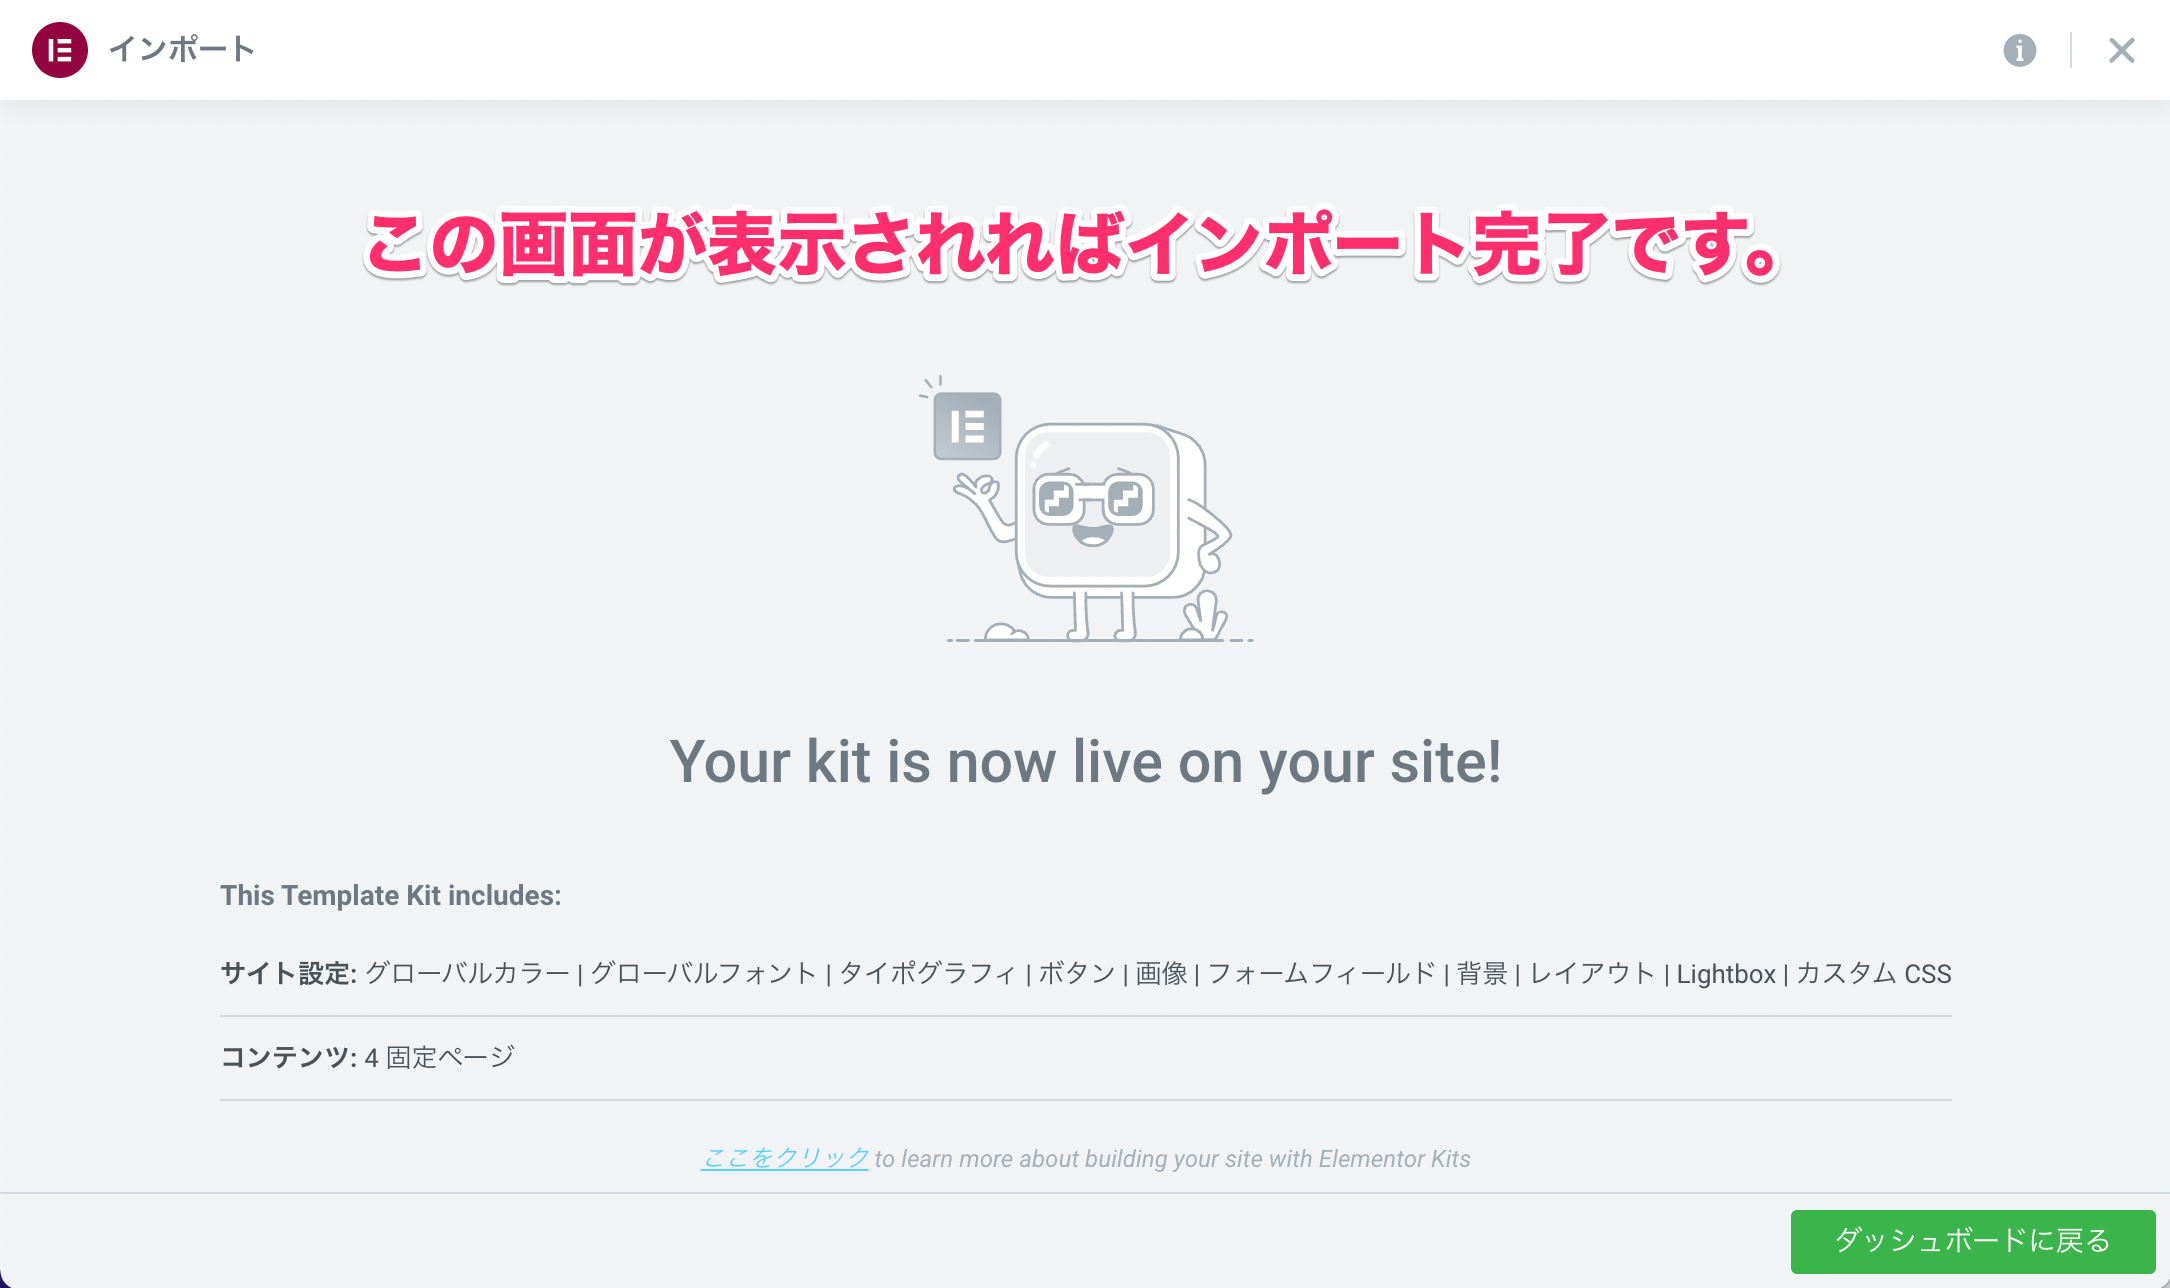 インポート完了後の表示画面『Your kit is now live on your site』